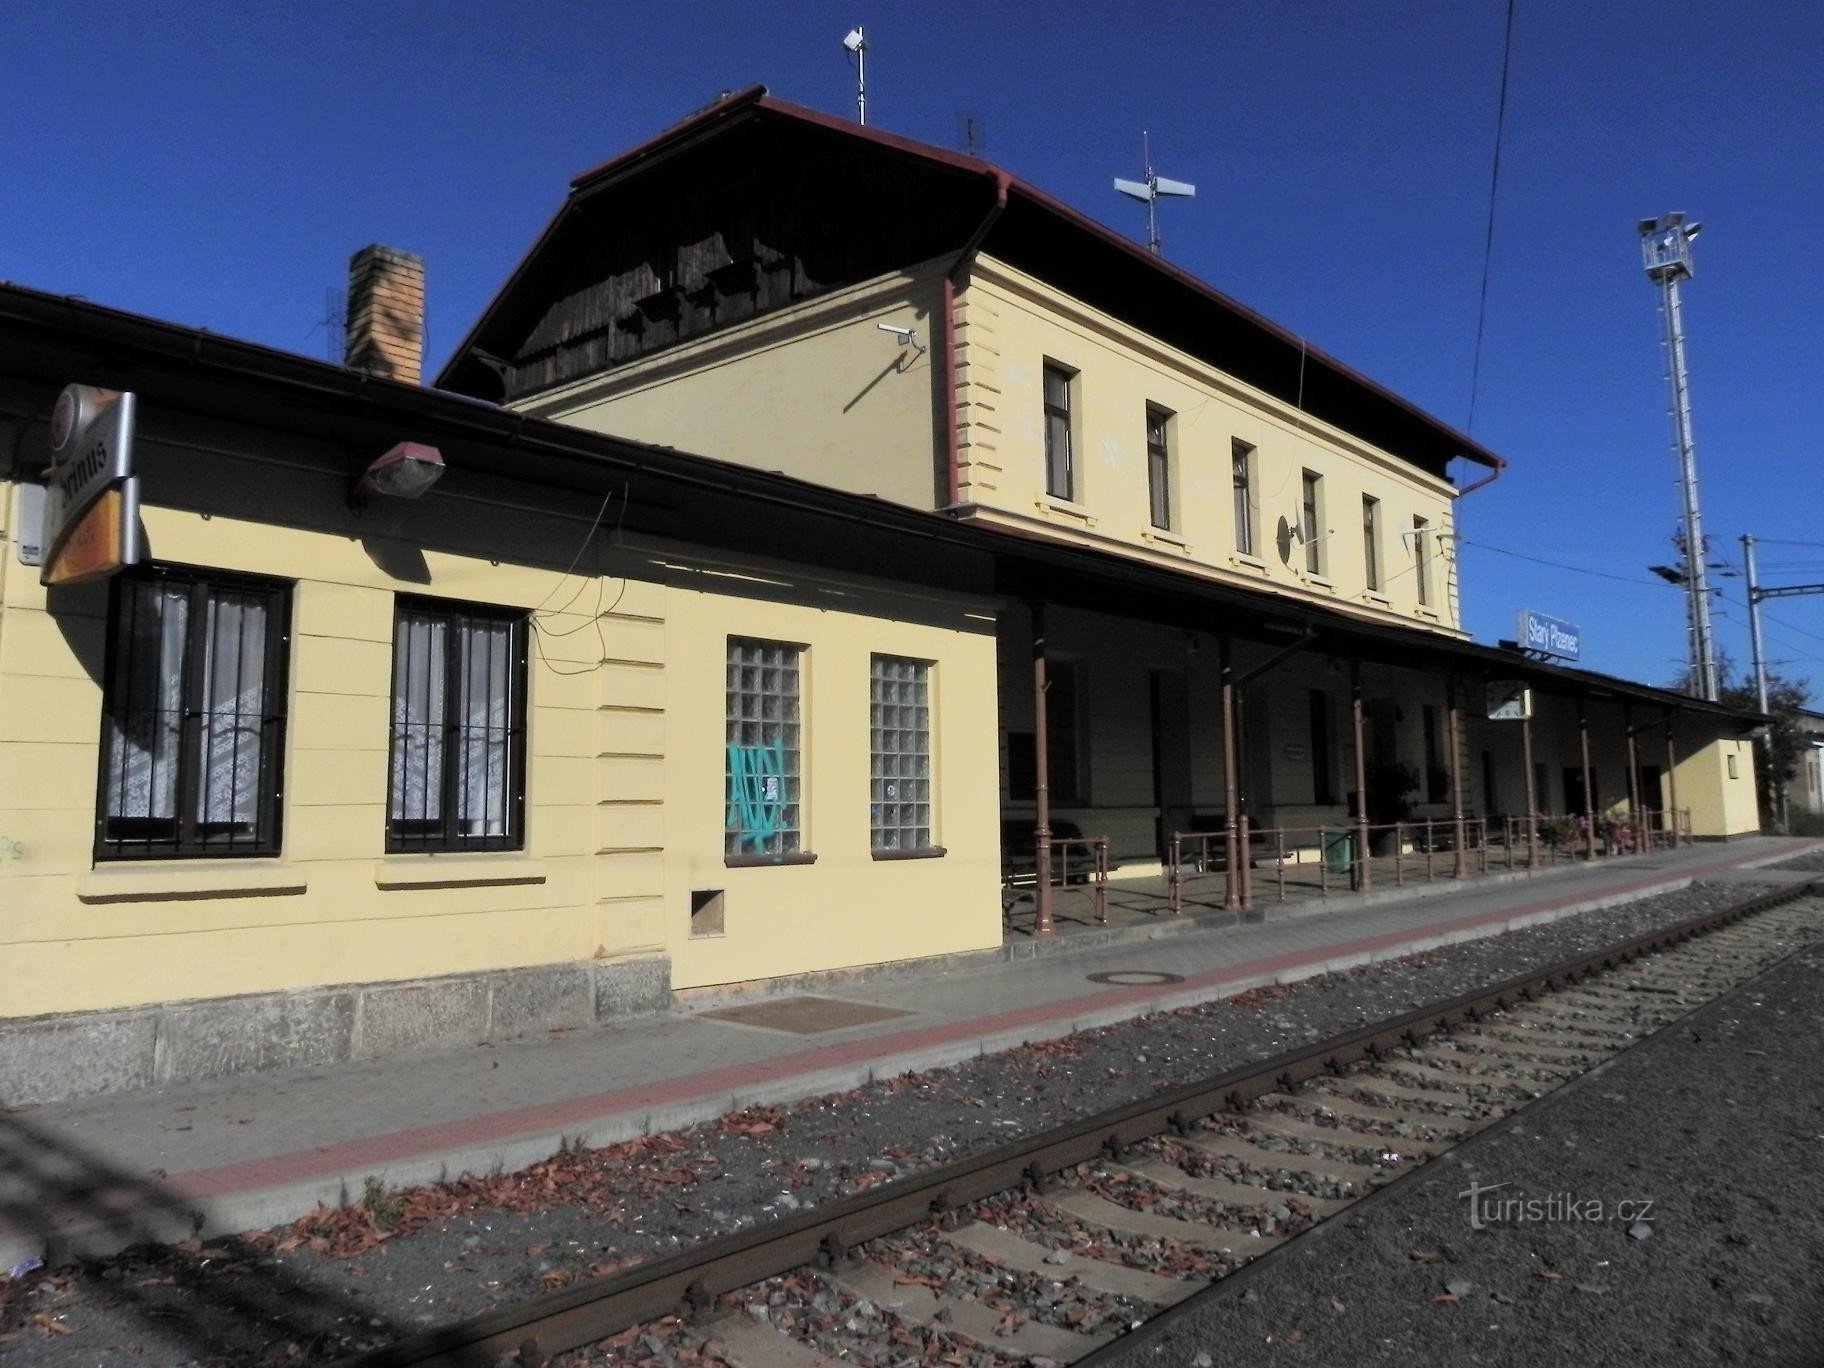 Starý Plzenec、鉄道駅